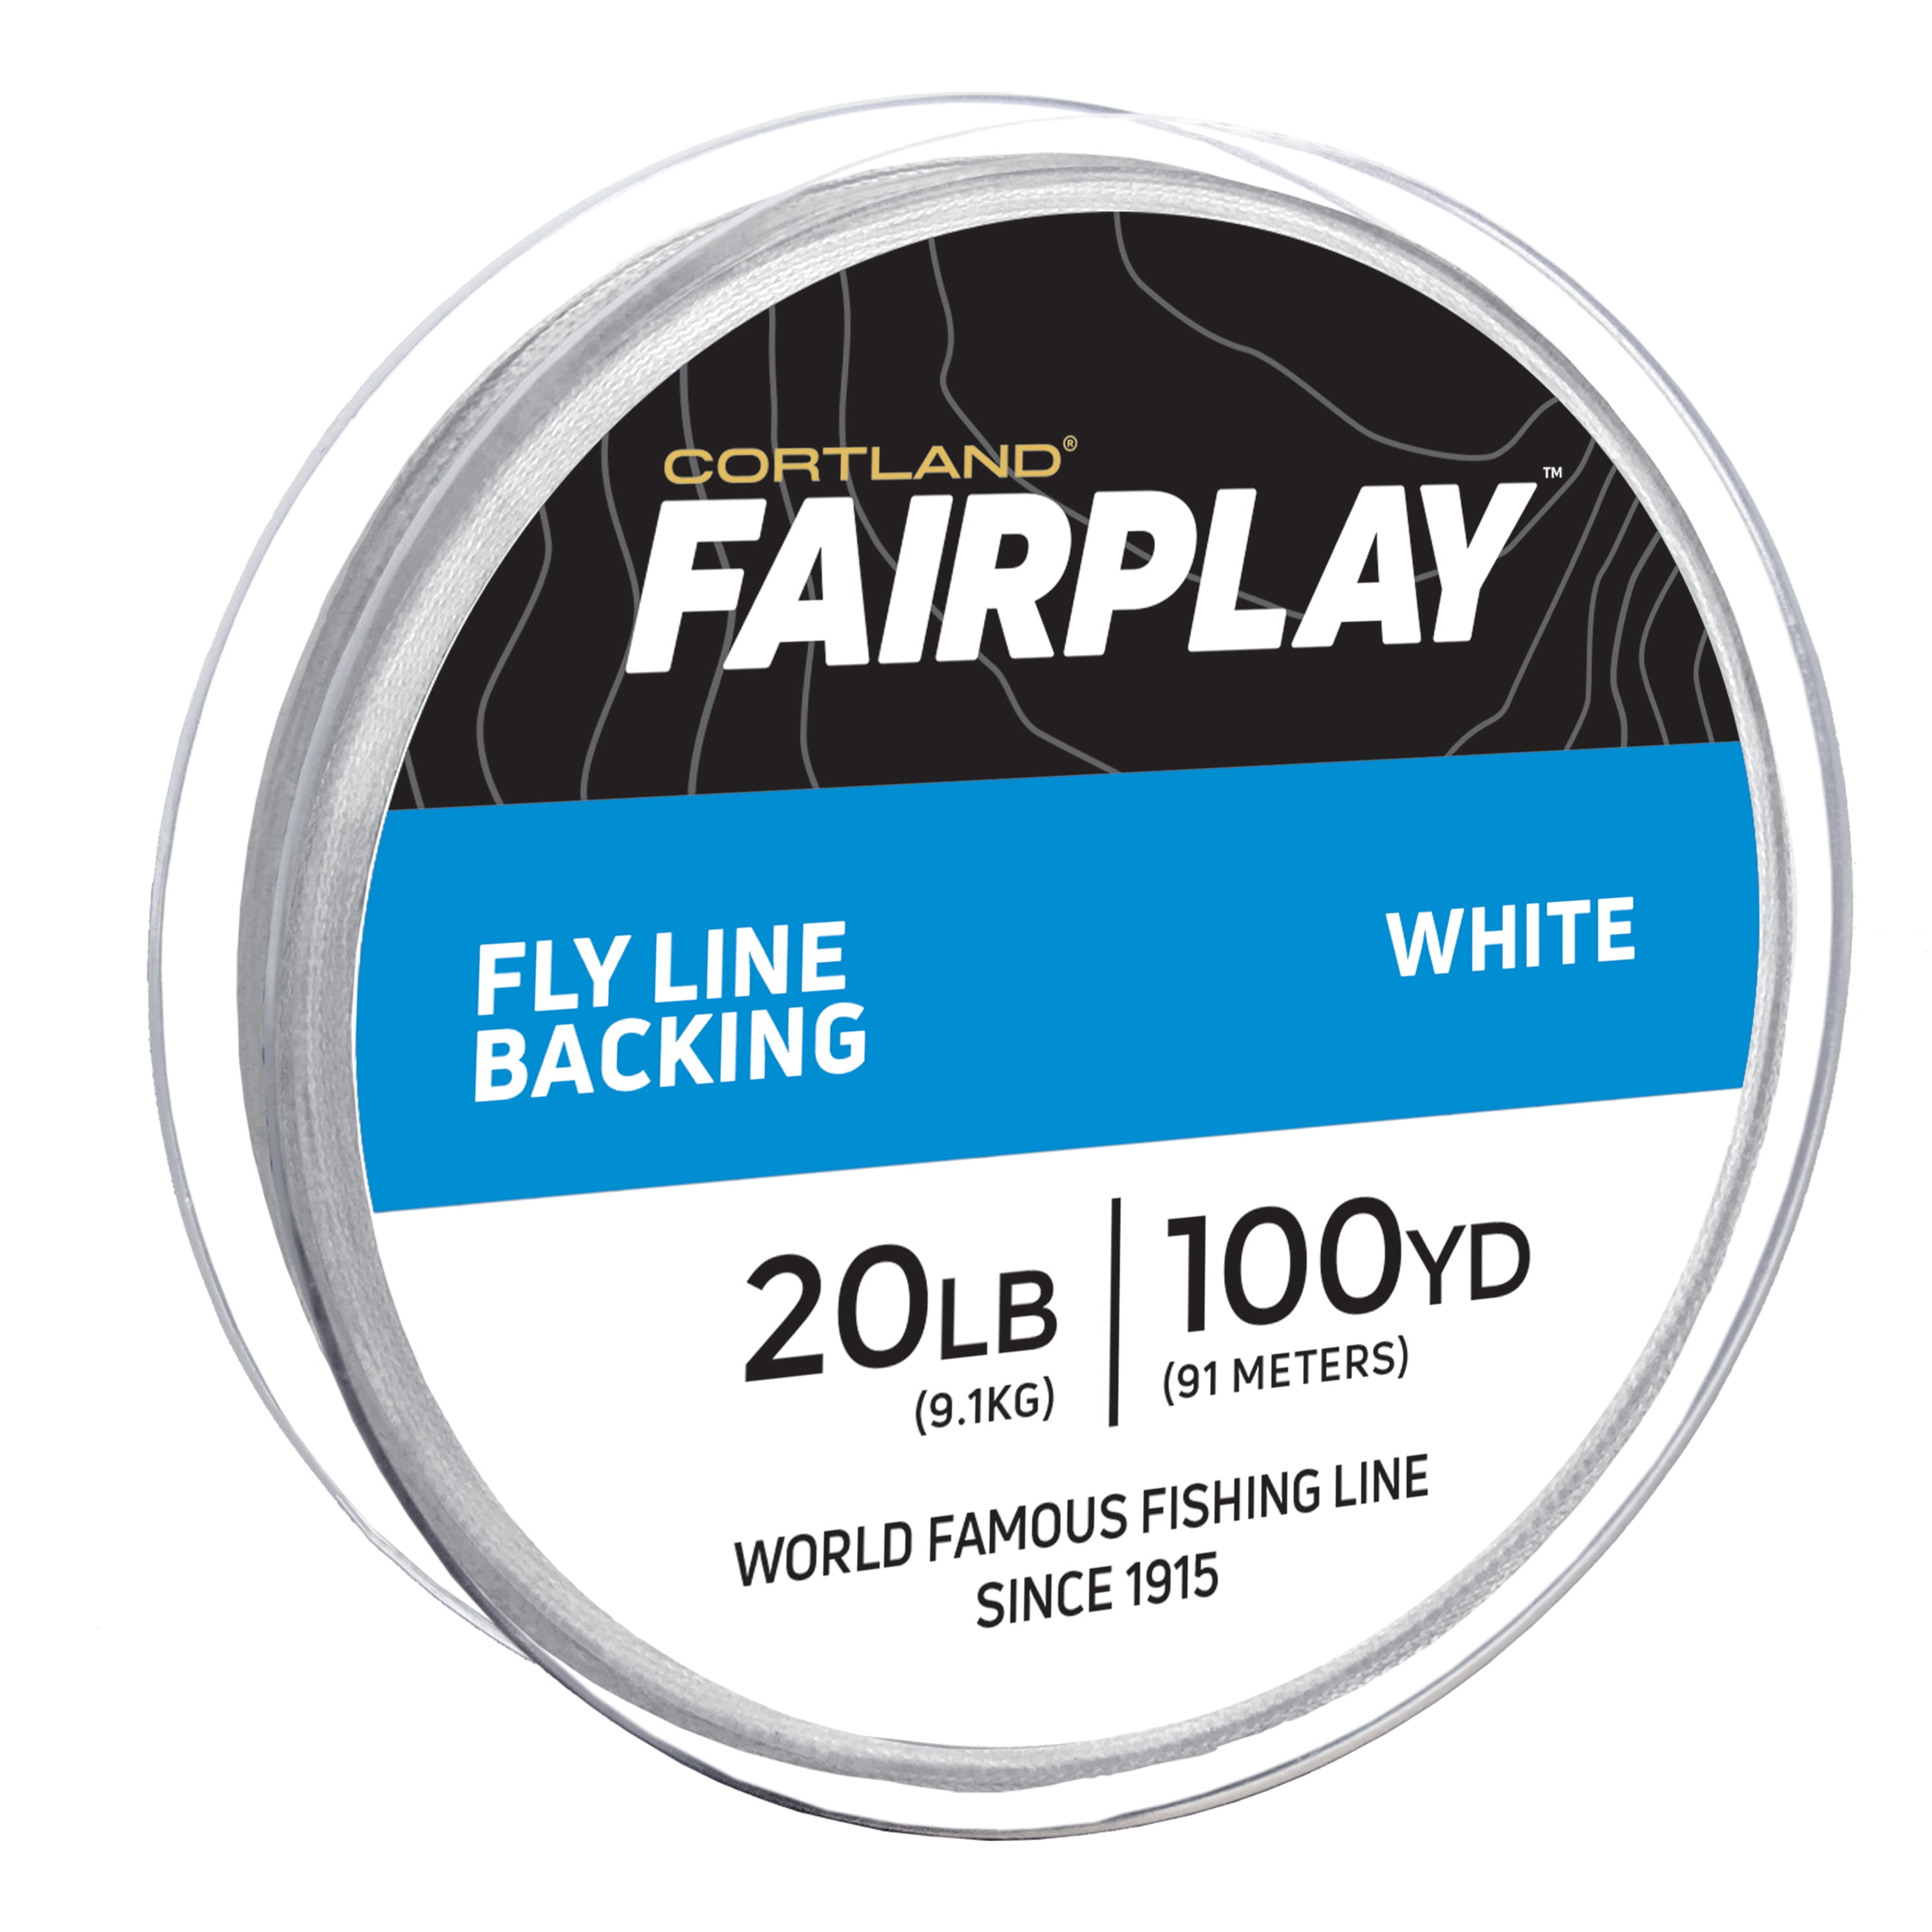 Cortland Micron Fly Line Backing HI-VIS ORANGE 20 lb Test 100 to 2,500 YdS 